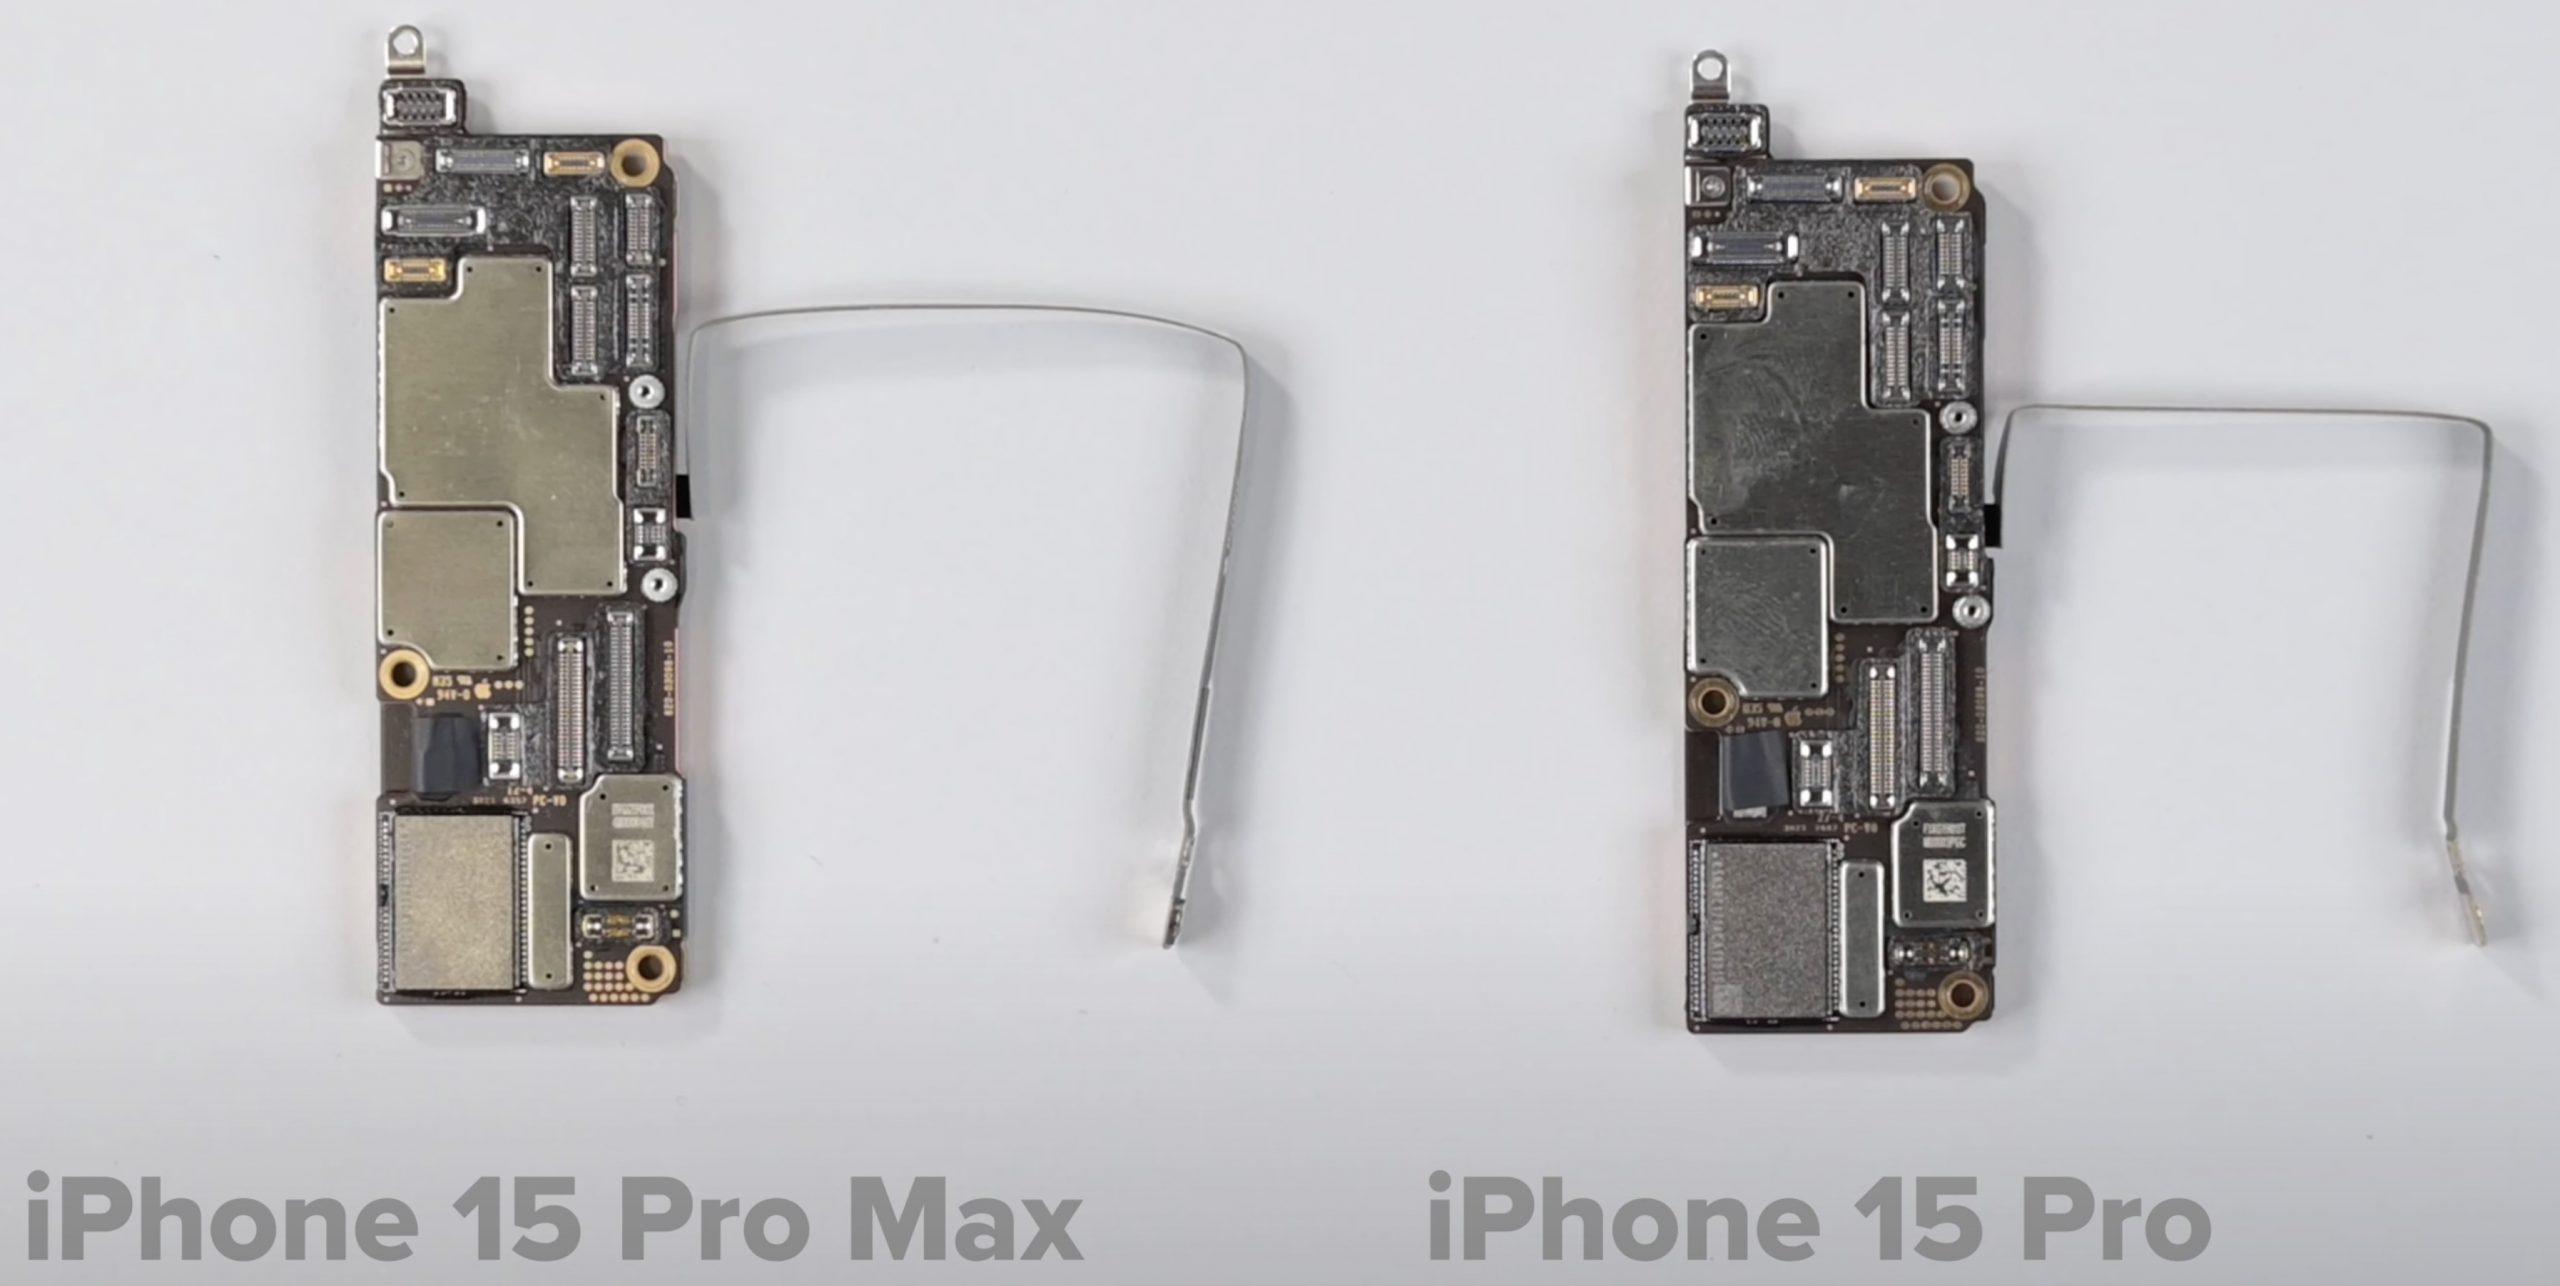 Placa base del iPhone 15 Pro Max y iPhone 15 Pro con sus antenas de radio 5G, parecen prácticamente idénticas